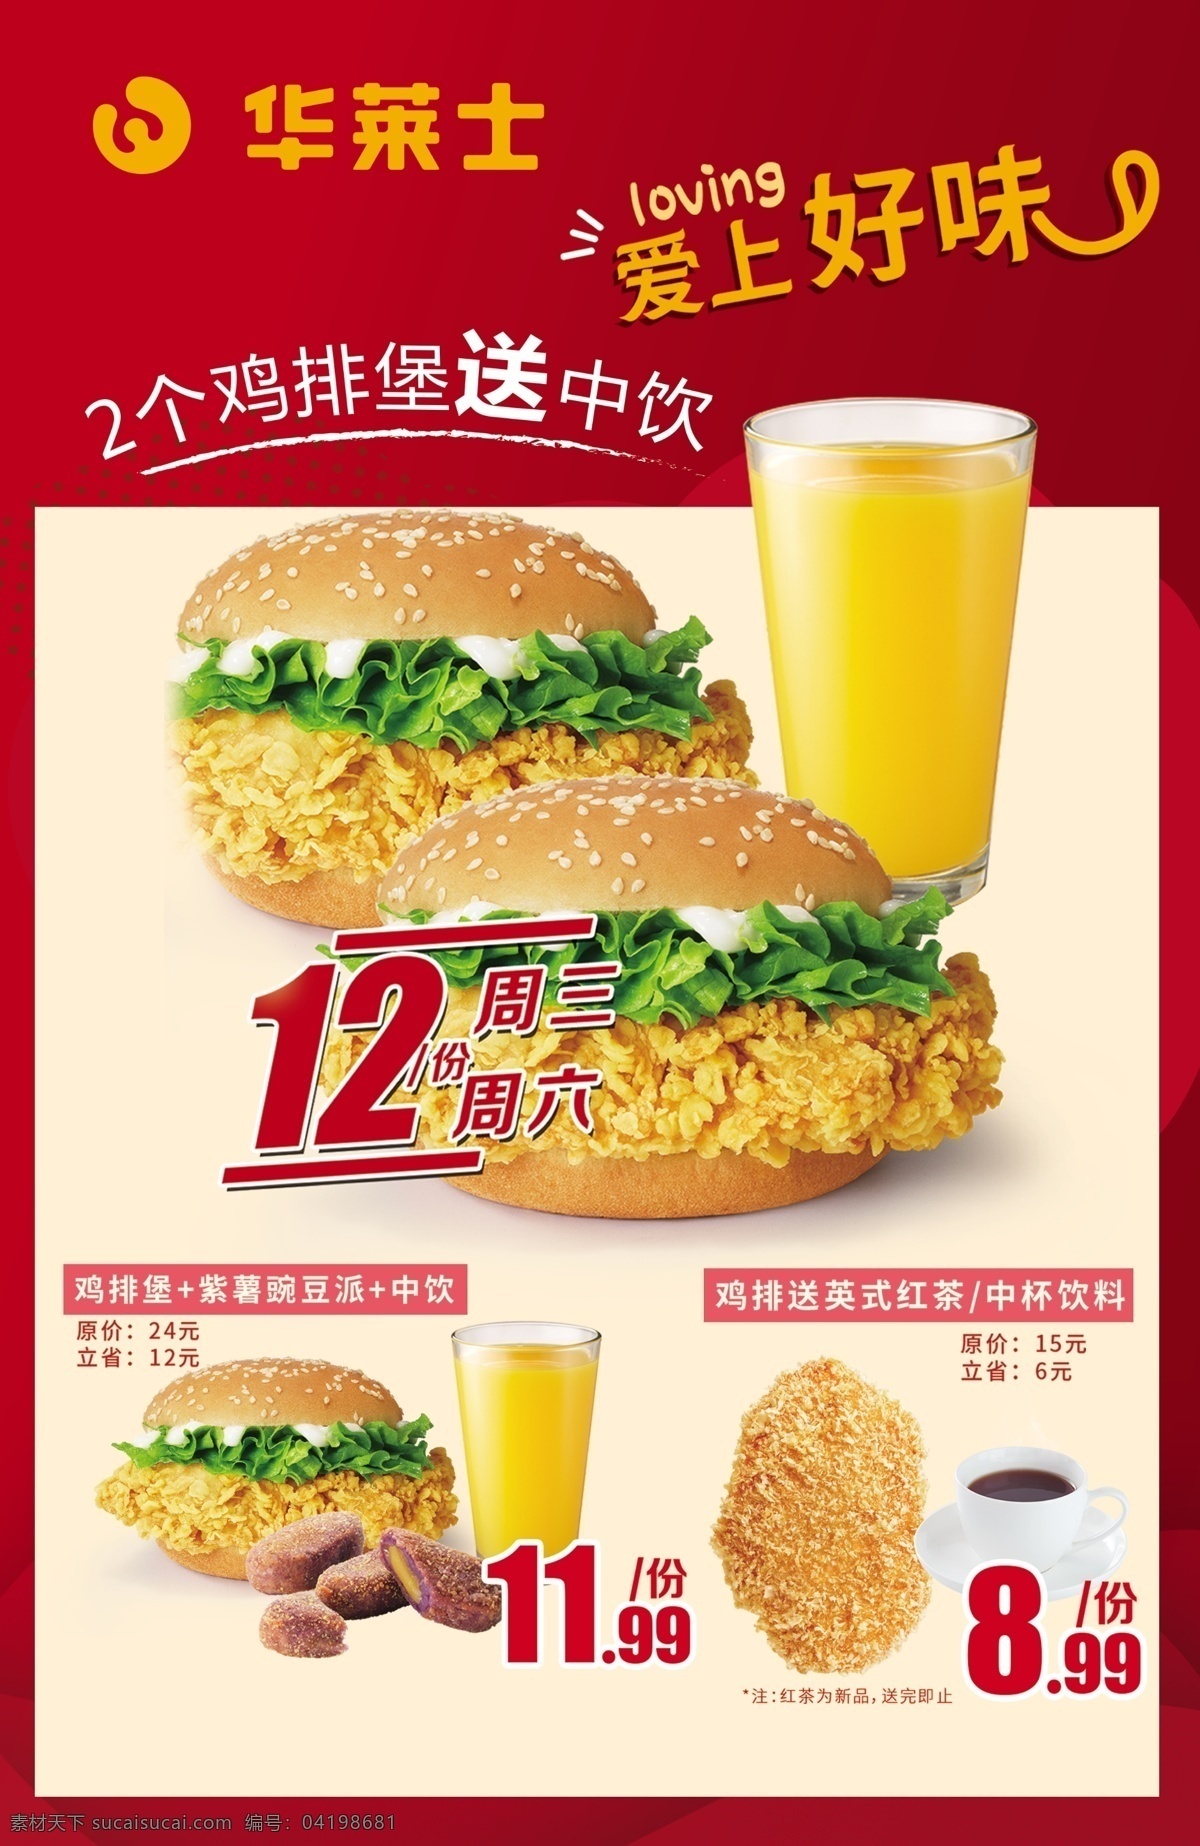 华莱士 炸鸡汉堡 活动海报 汉堡炸鸡 饮料 鸡排 鸡排堡 咖啡 优惠价 套餐